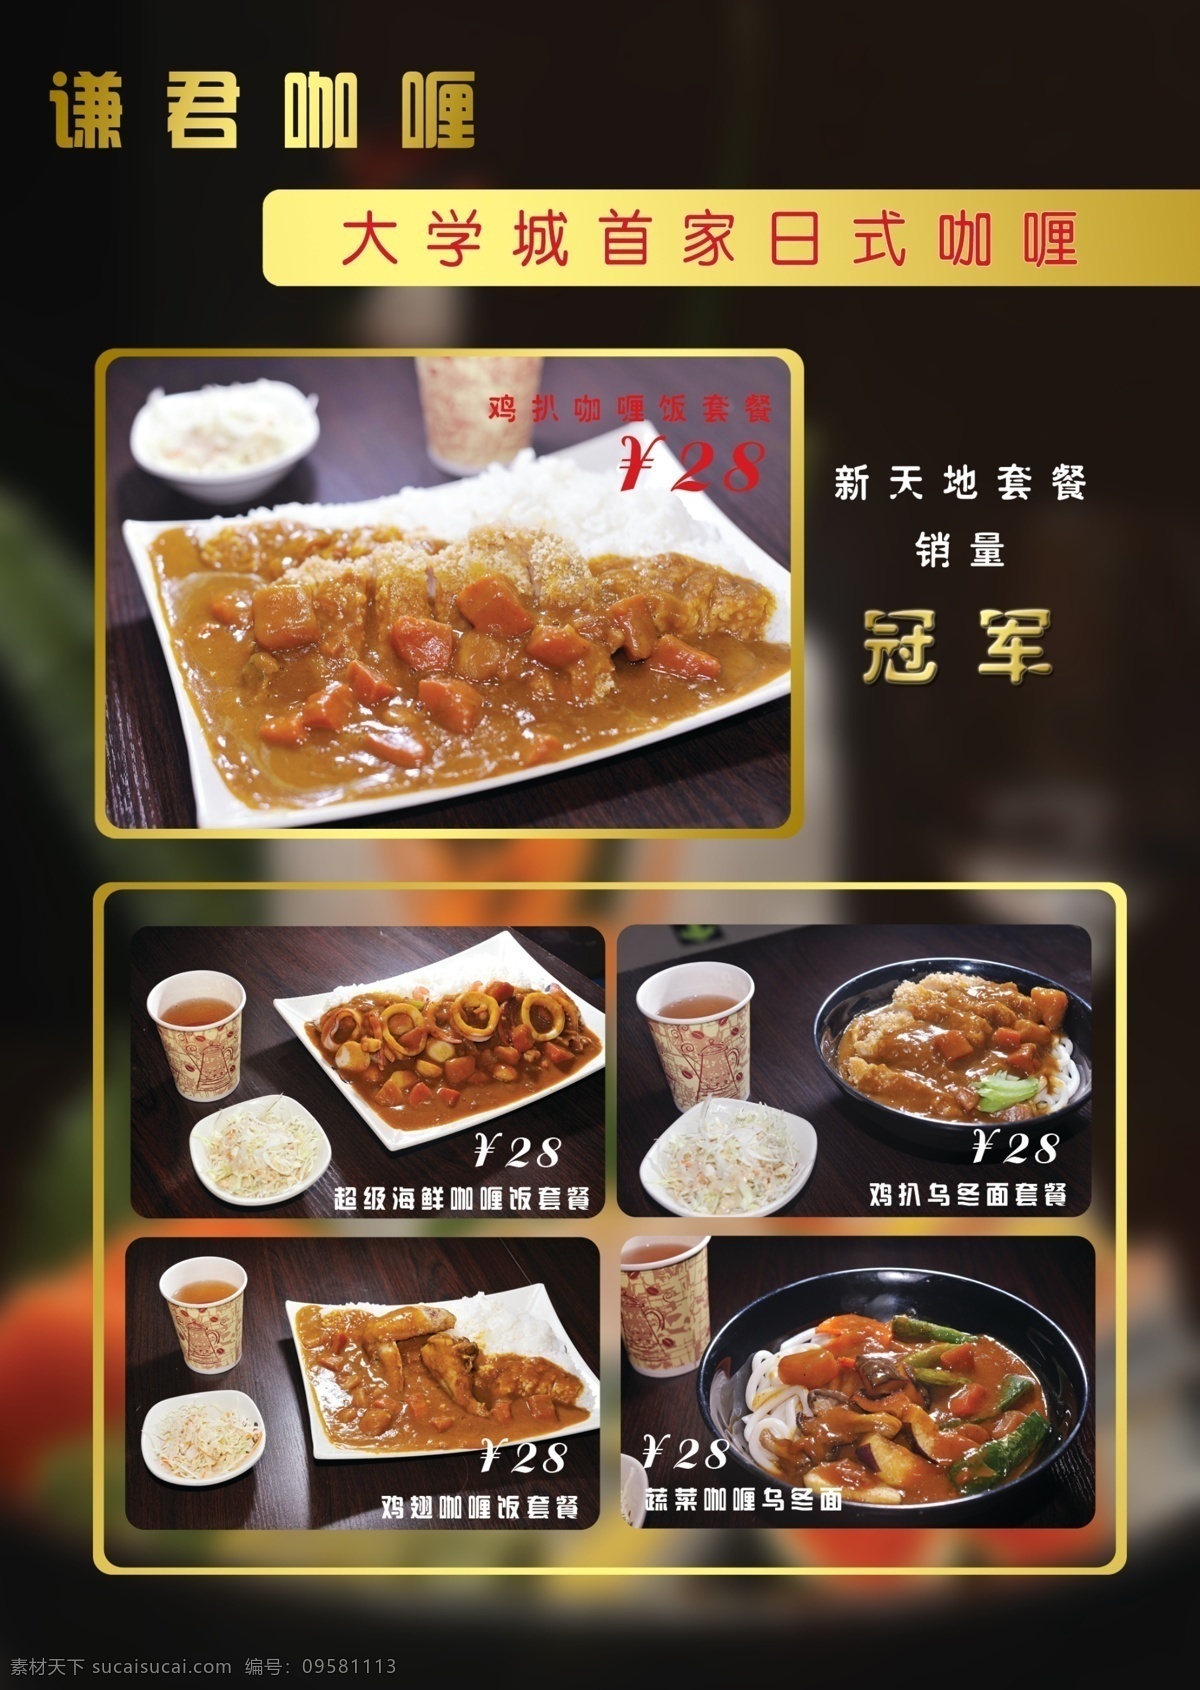 咖喱饭宣传单 日式咖喱饭 日本 咖喱 餐厅 单页 dm dm宣传单 广告设计模板 源文件